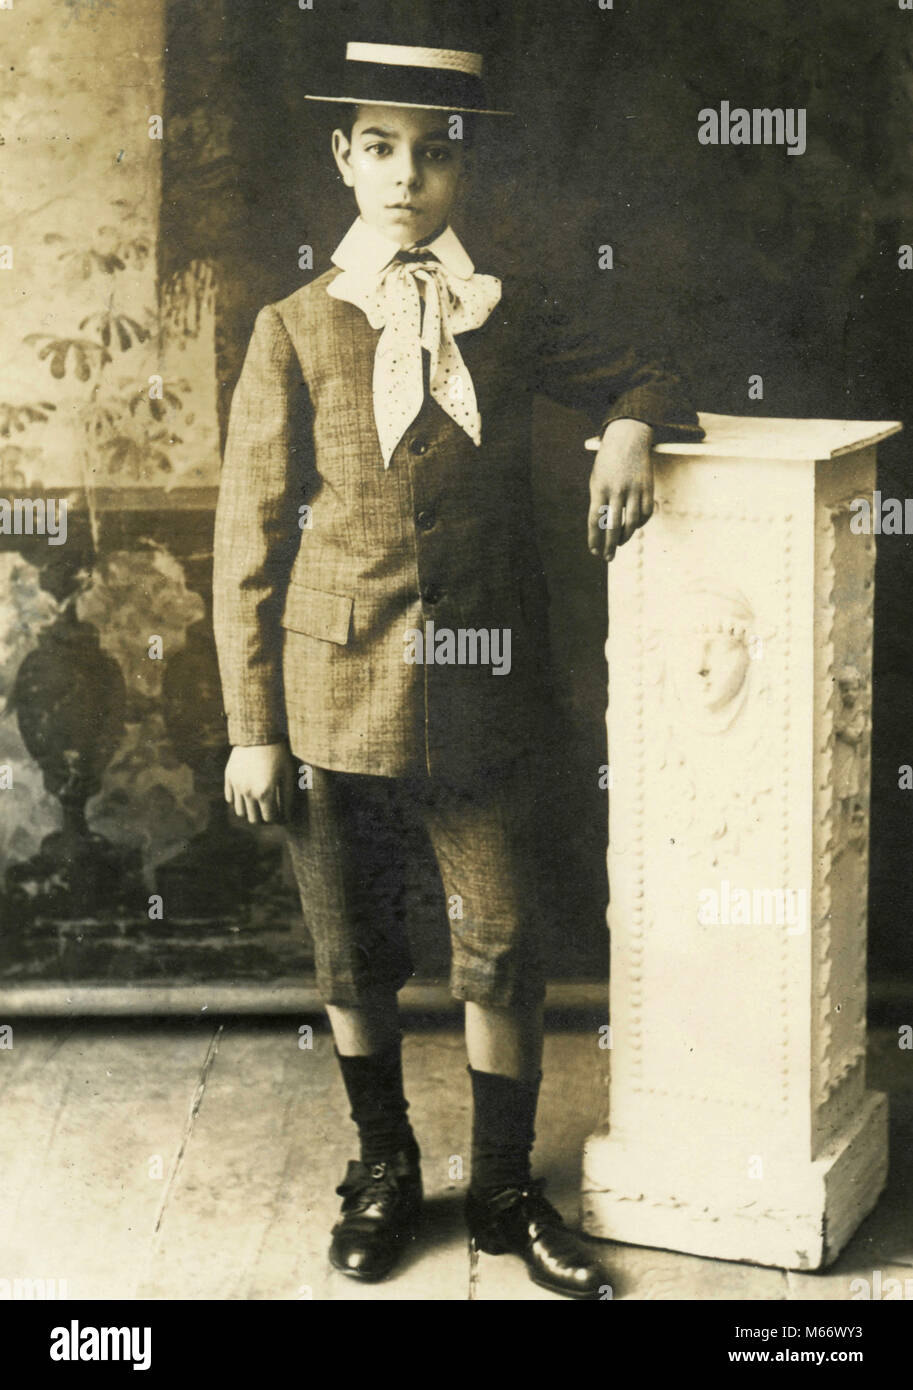 Portrait de jeune garçon élégamment vêtue avec chapeau de paille, Italie 1920 Banque D'Images